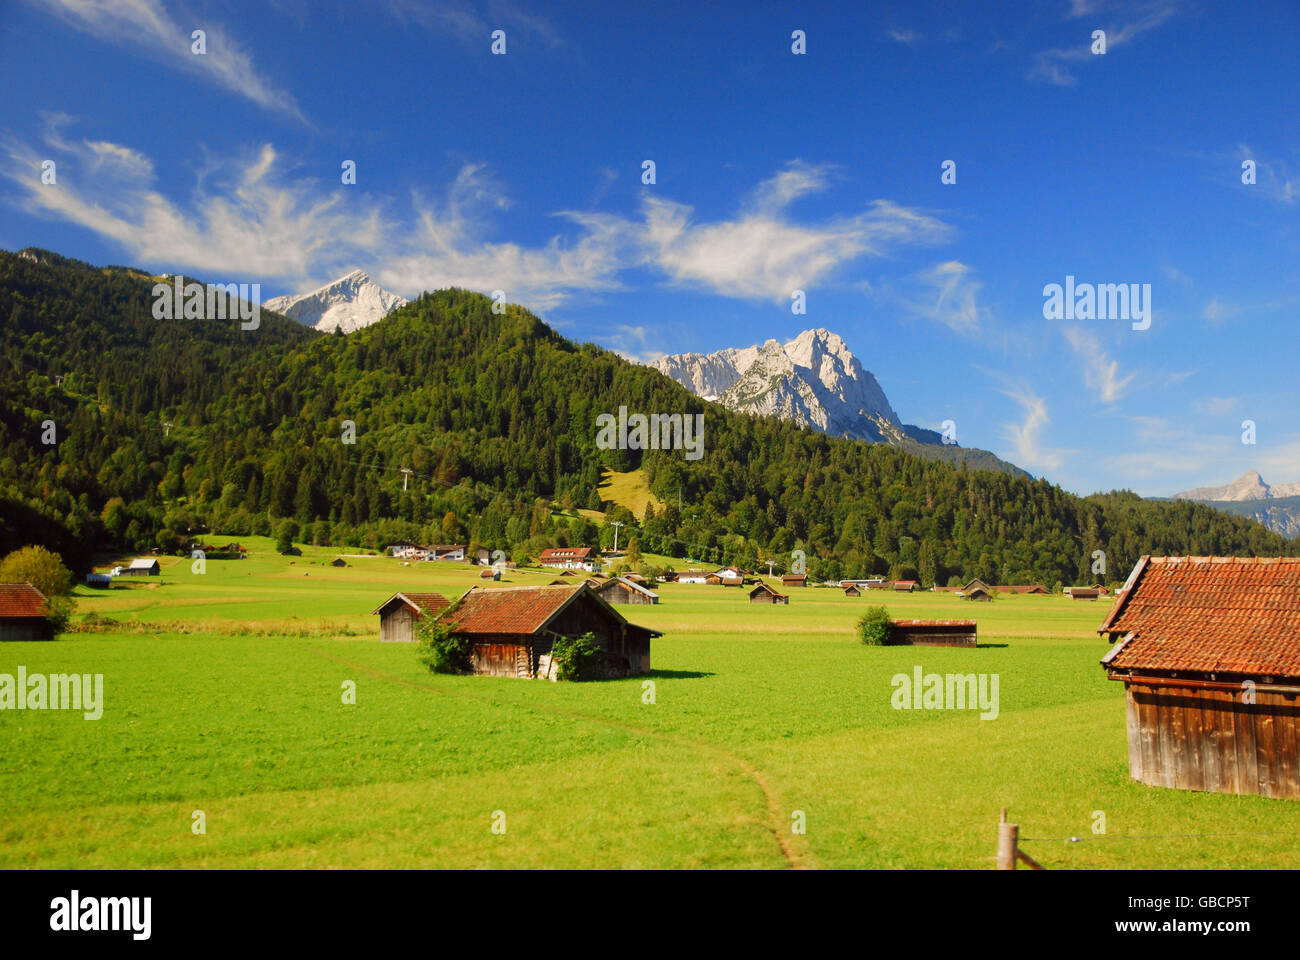 Alpine pasture, mountains Waxentein and Alpspitze, Wetterstein mountains, Garmisch-Partenkirchen, Bavaria, Germany Stock Photo